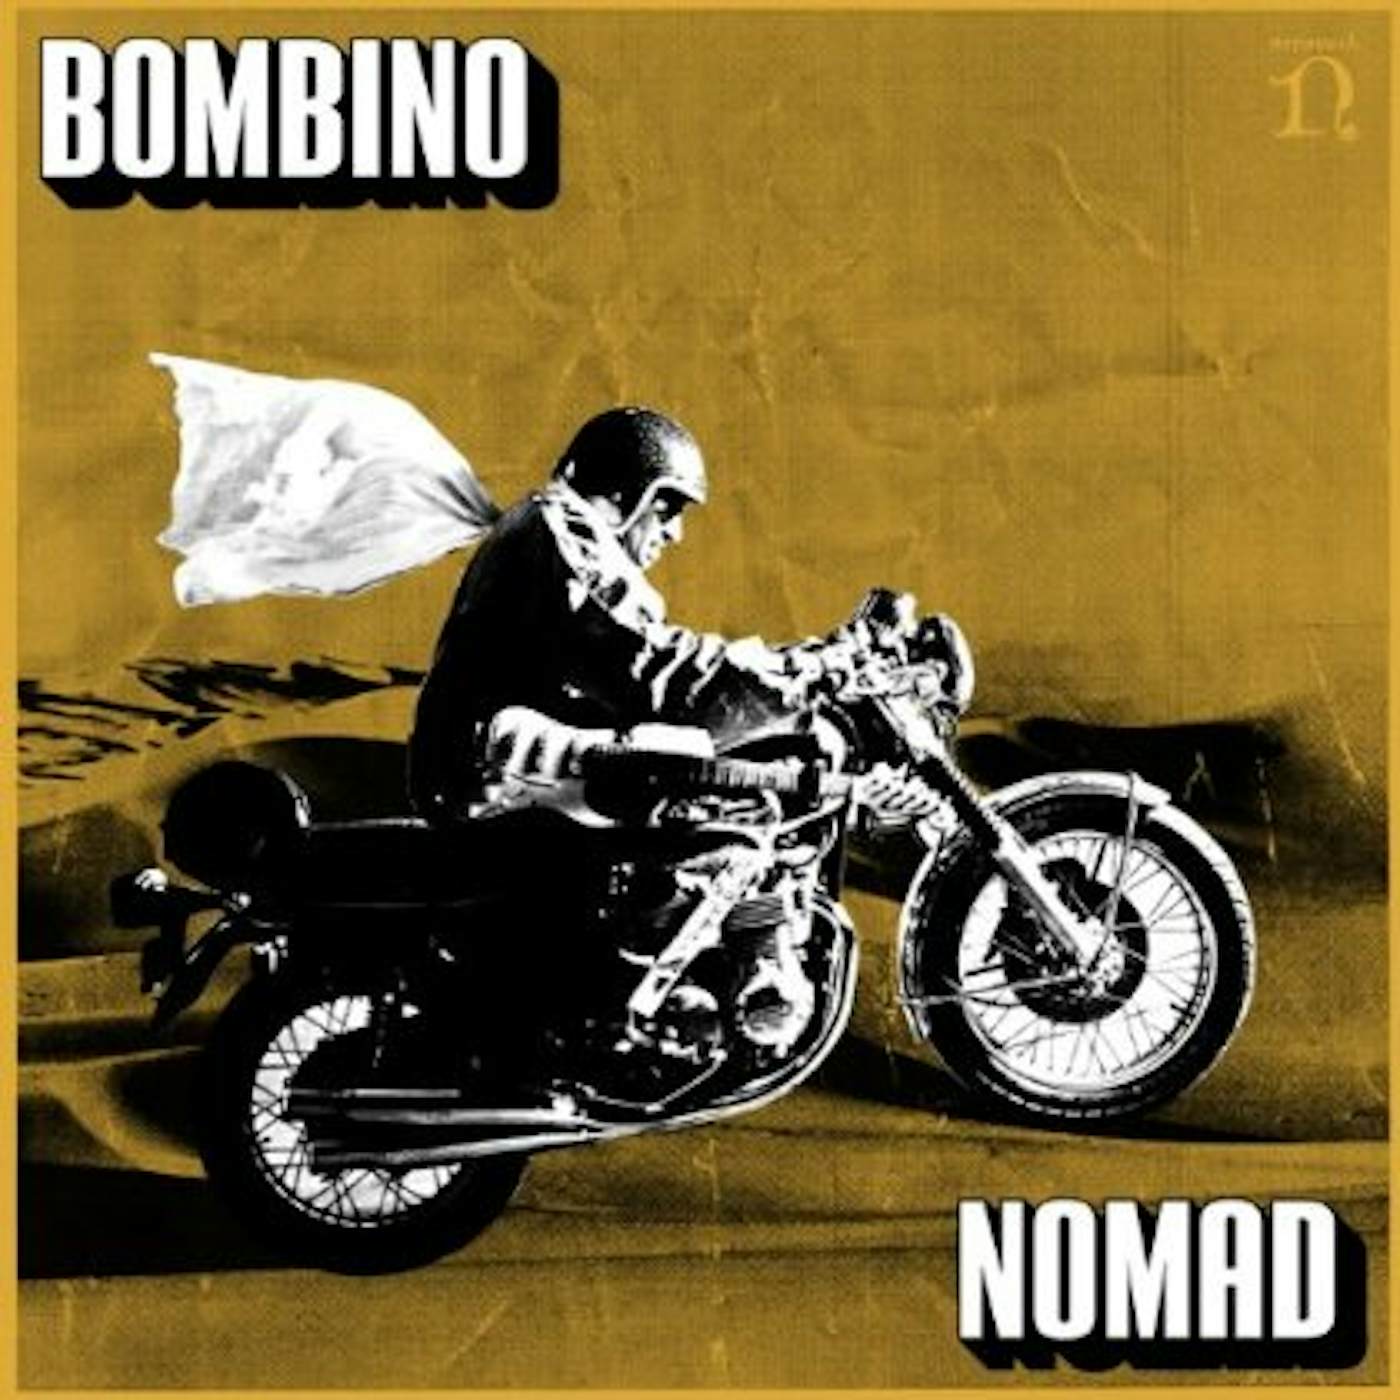 Bombino Nomad Vinyl Record